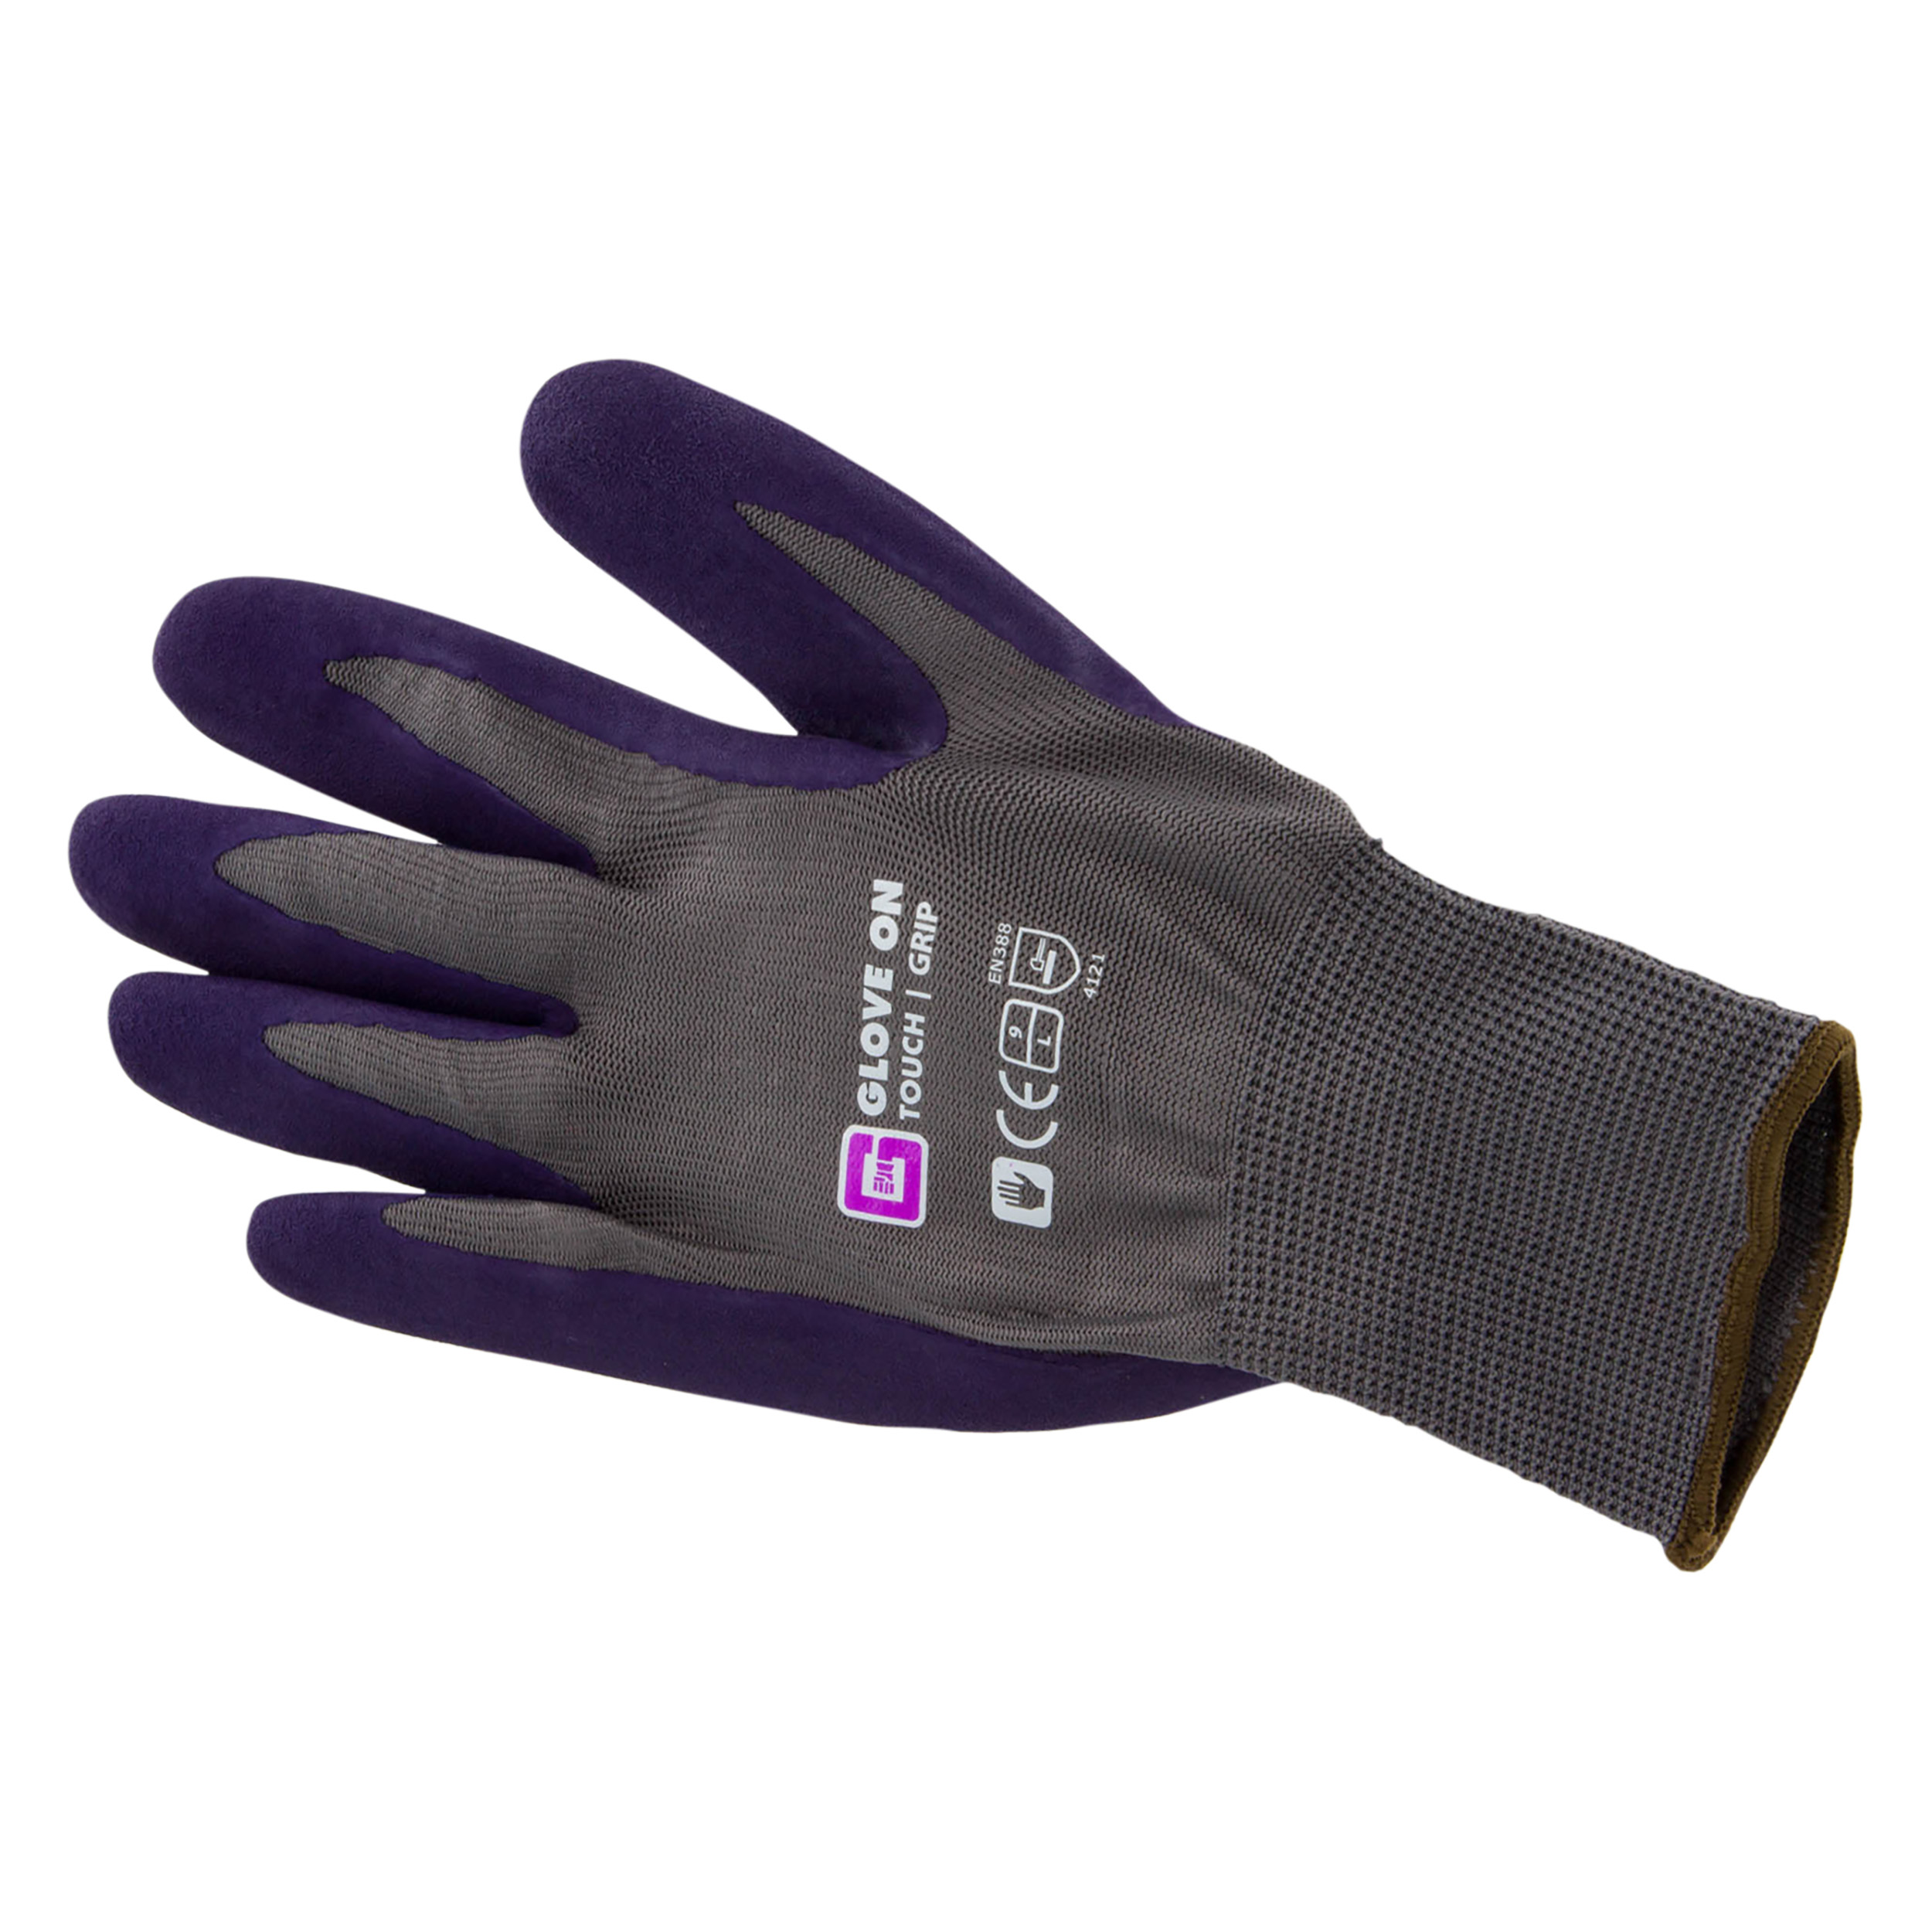 21.080.23 Glove On Touch werkhandschoen touch grip - L